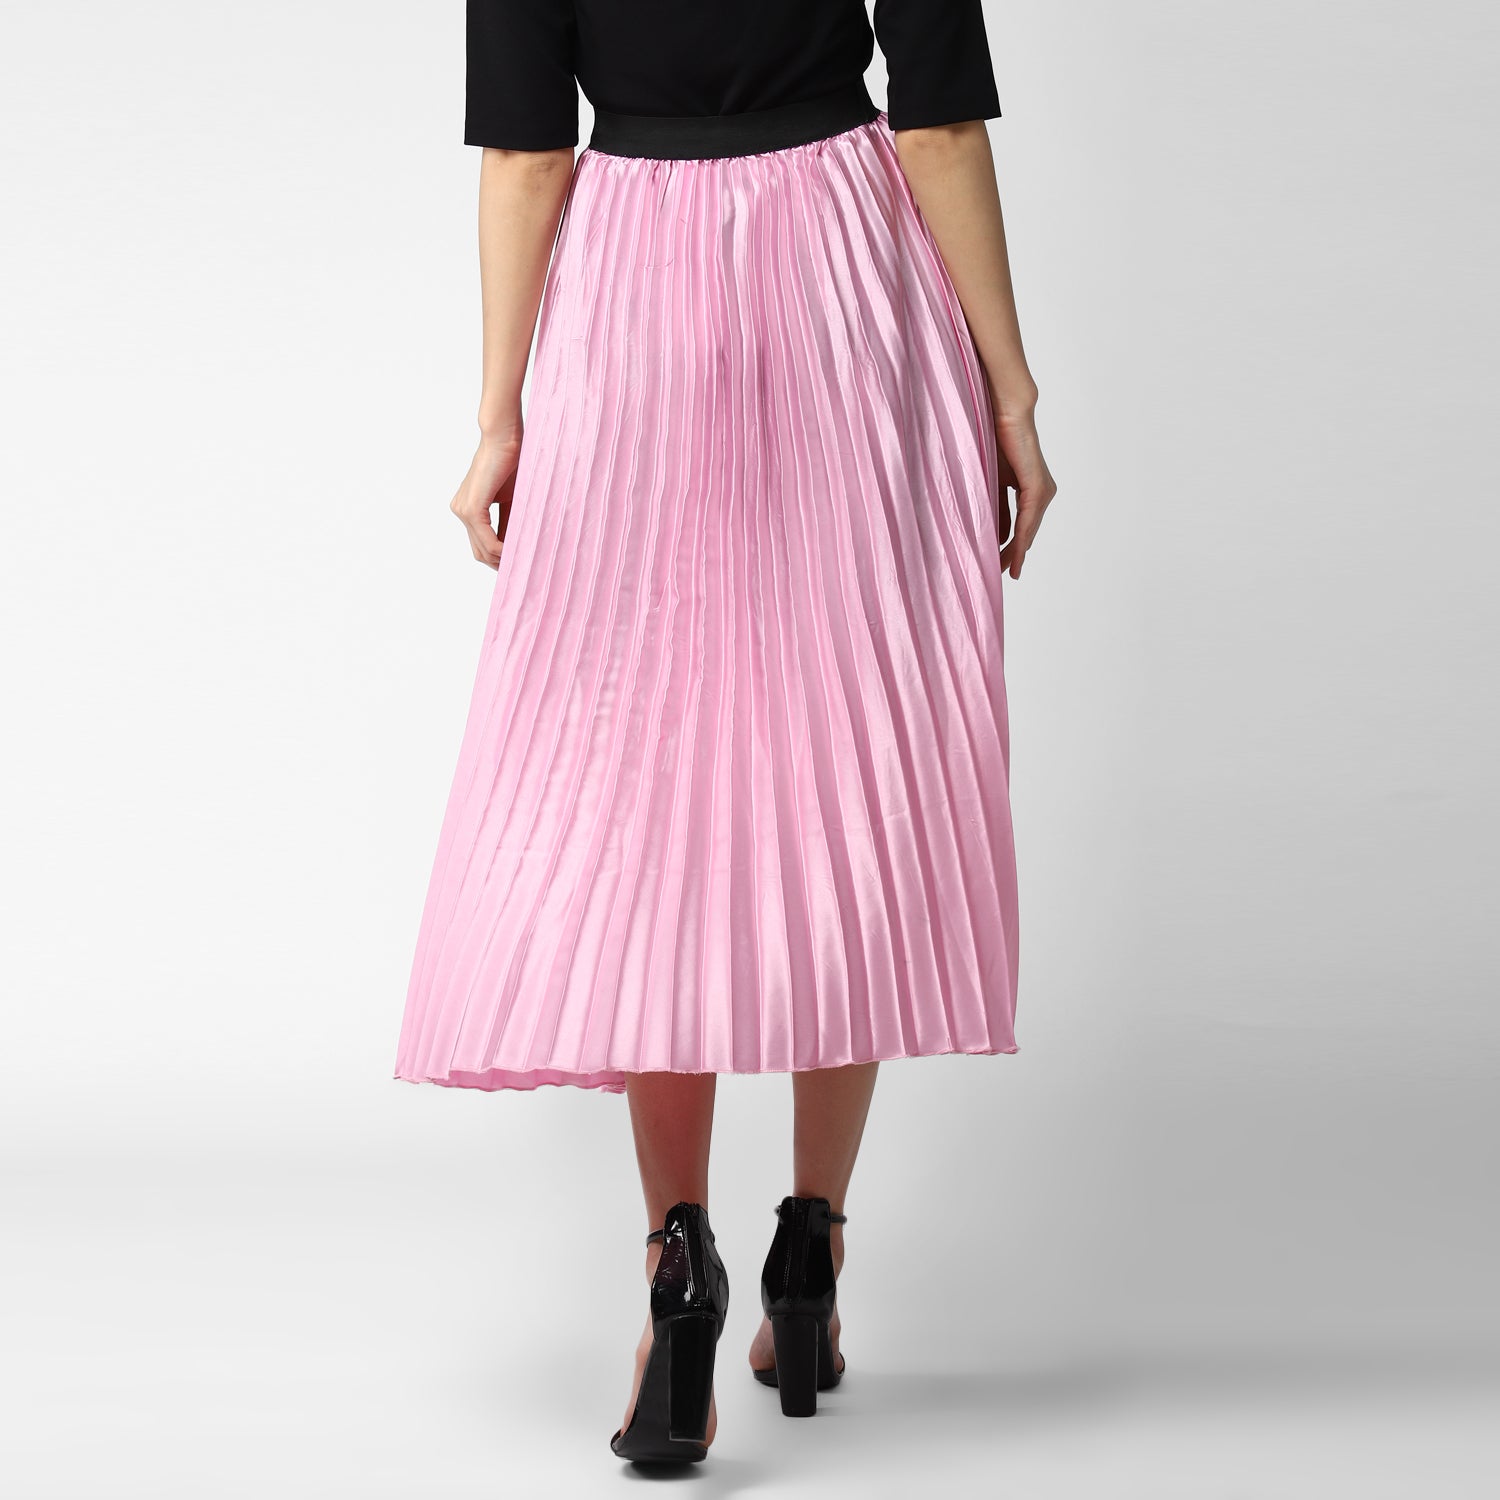 Women's Pink Satin Pleated Skirt - StyleStone